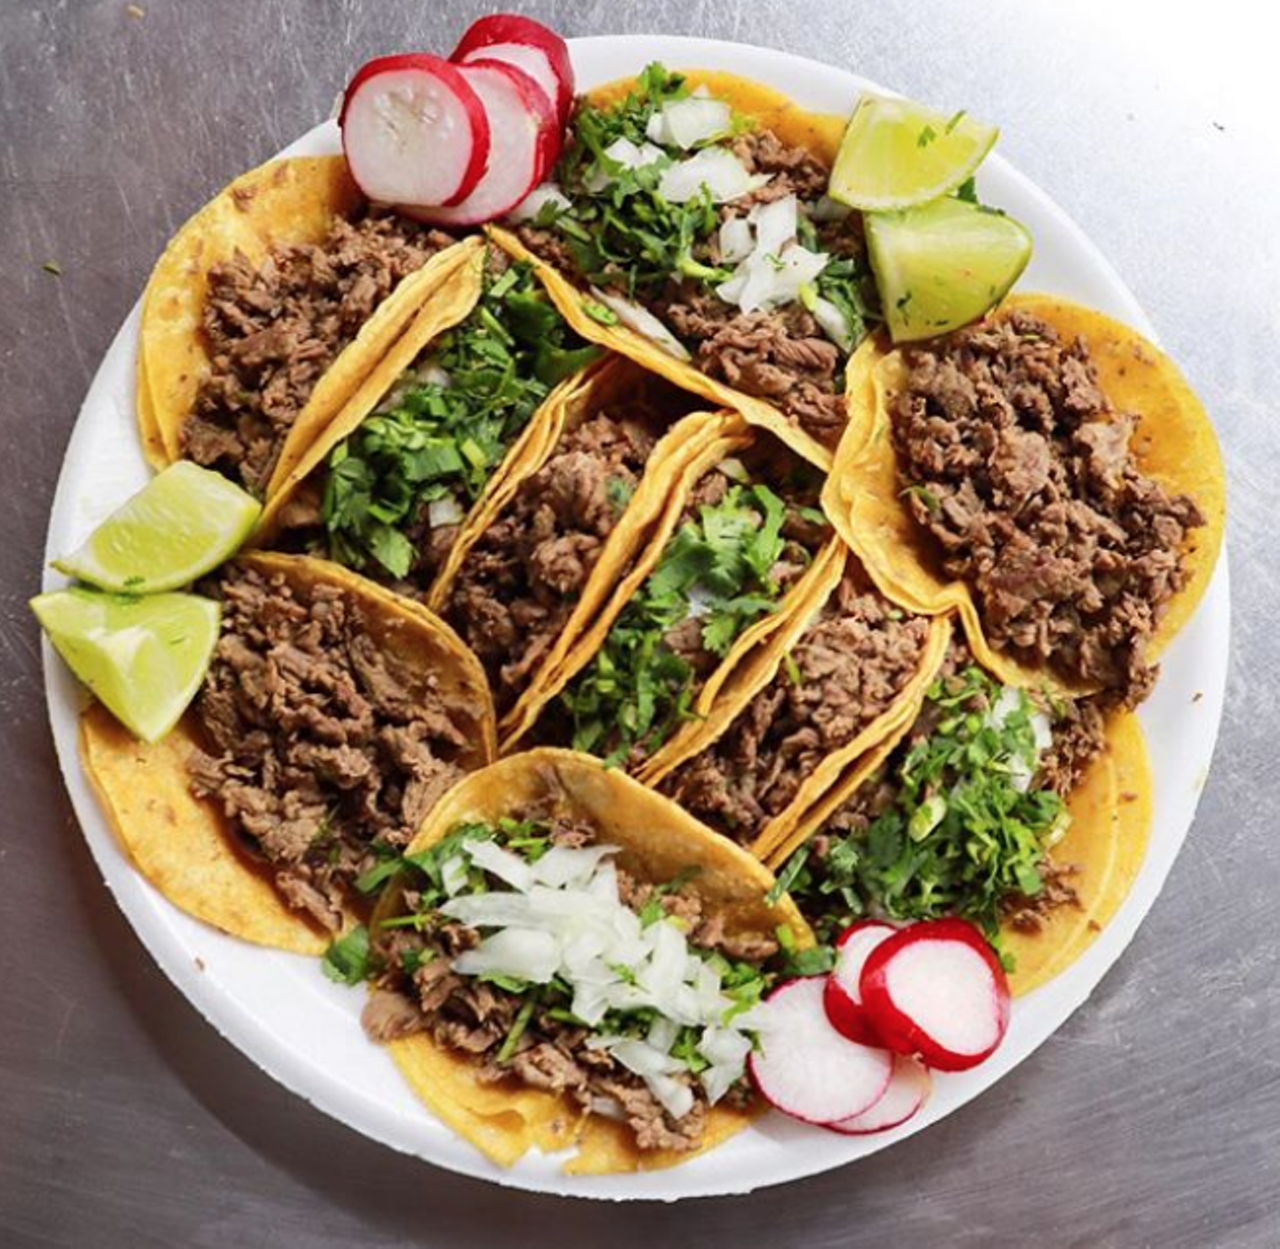 Best Tacos
Taquitos West Ave., 2818 West Ave, (210) 525-9888, facebook.com/TaquitosWestAvenue1
Photo via Instagram / sanantoniomunchies